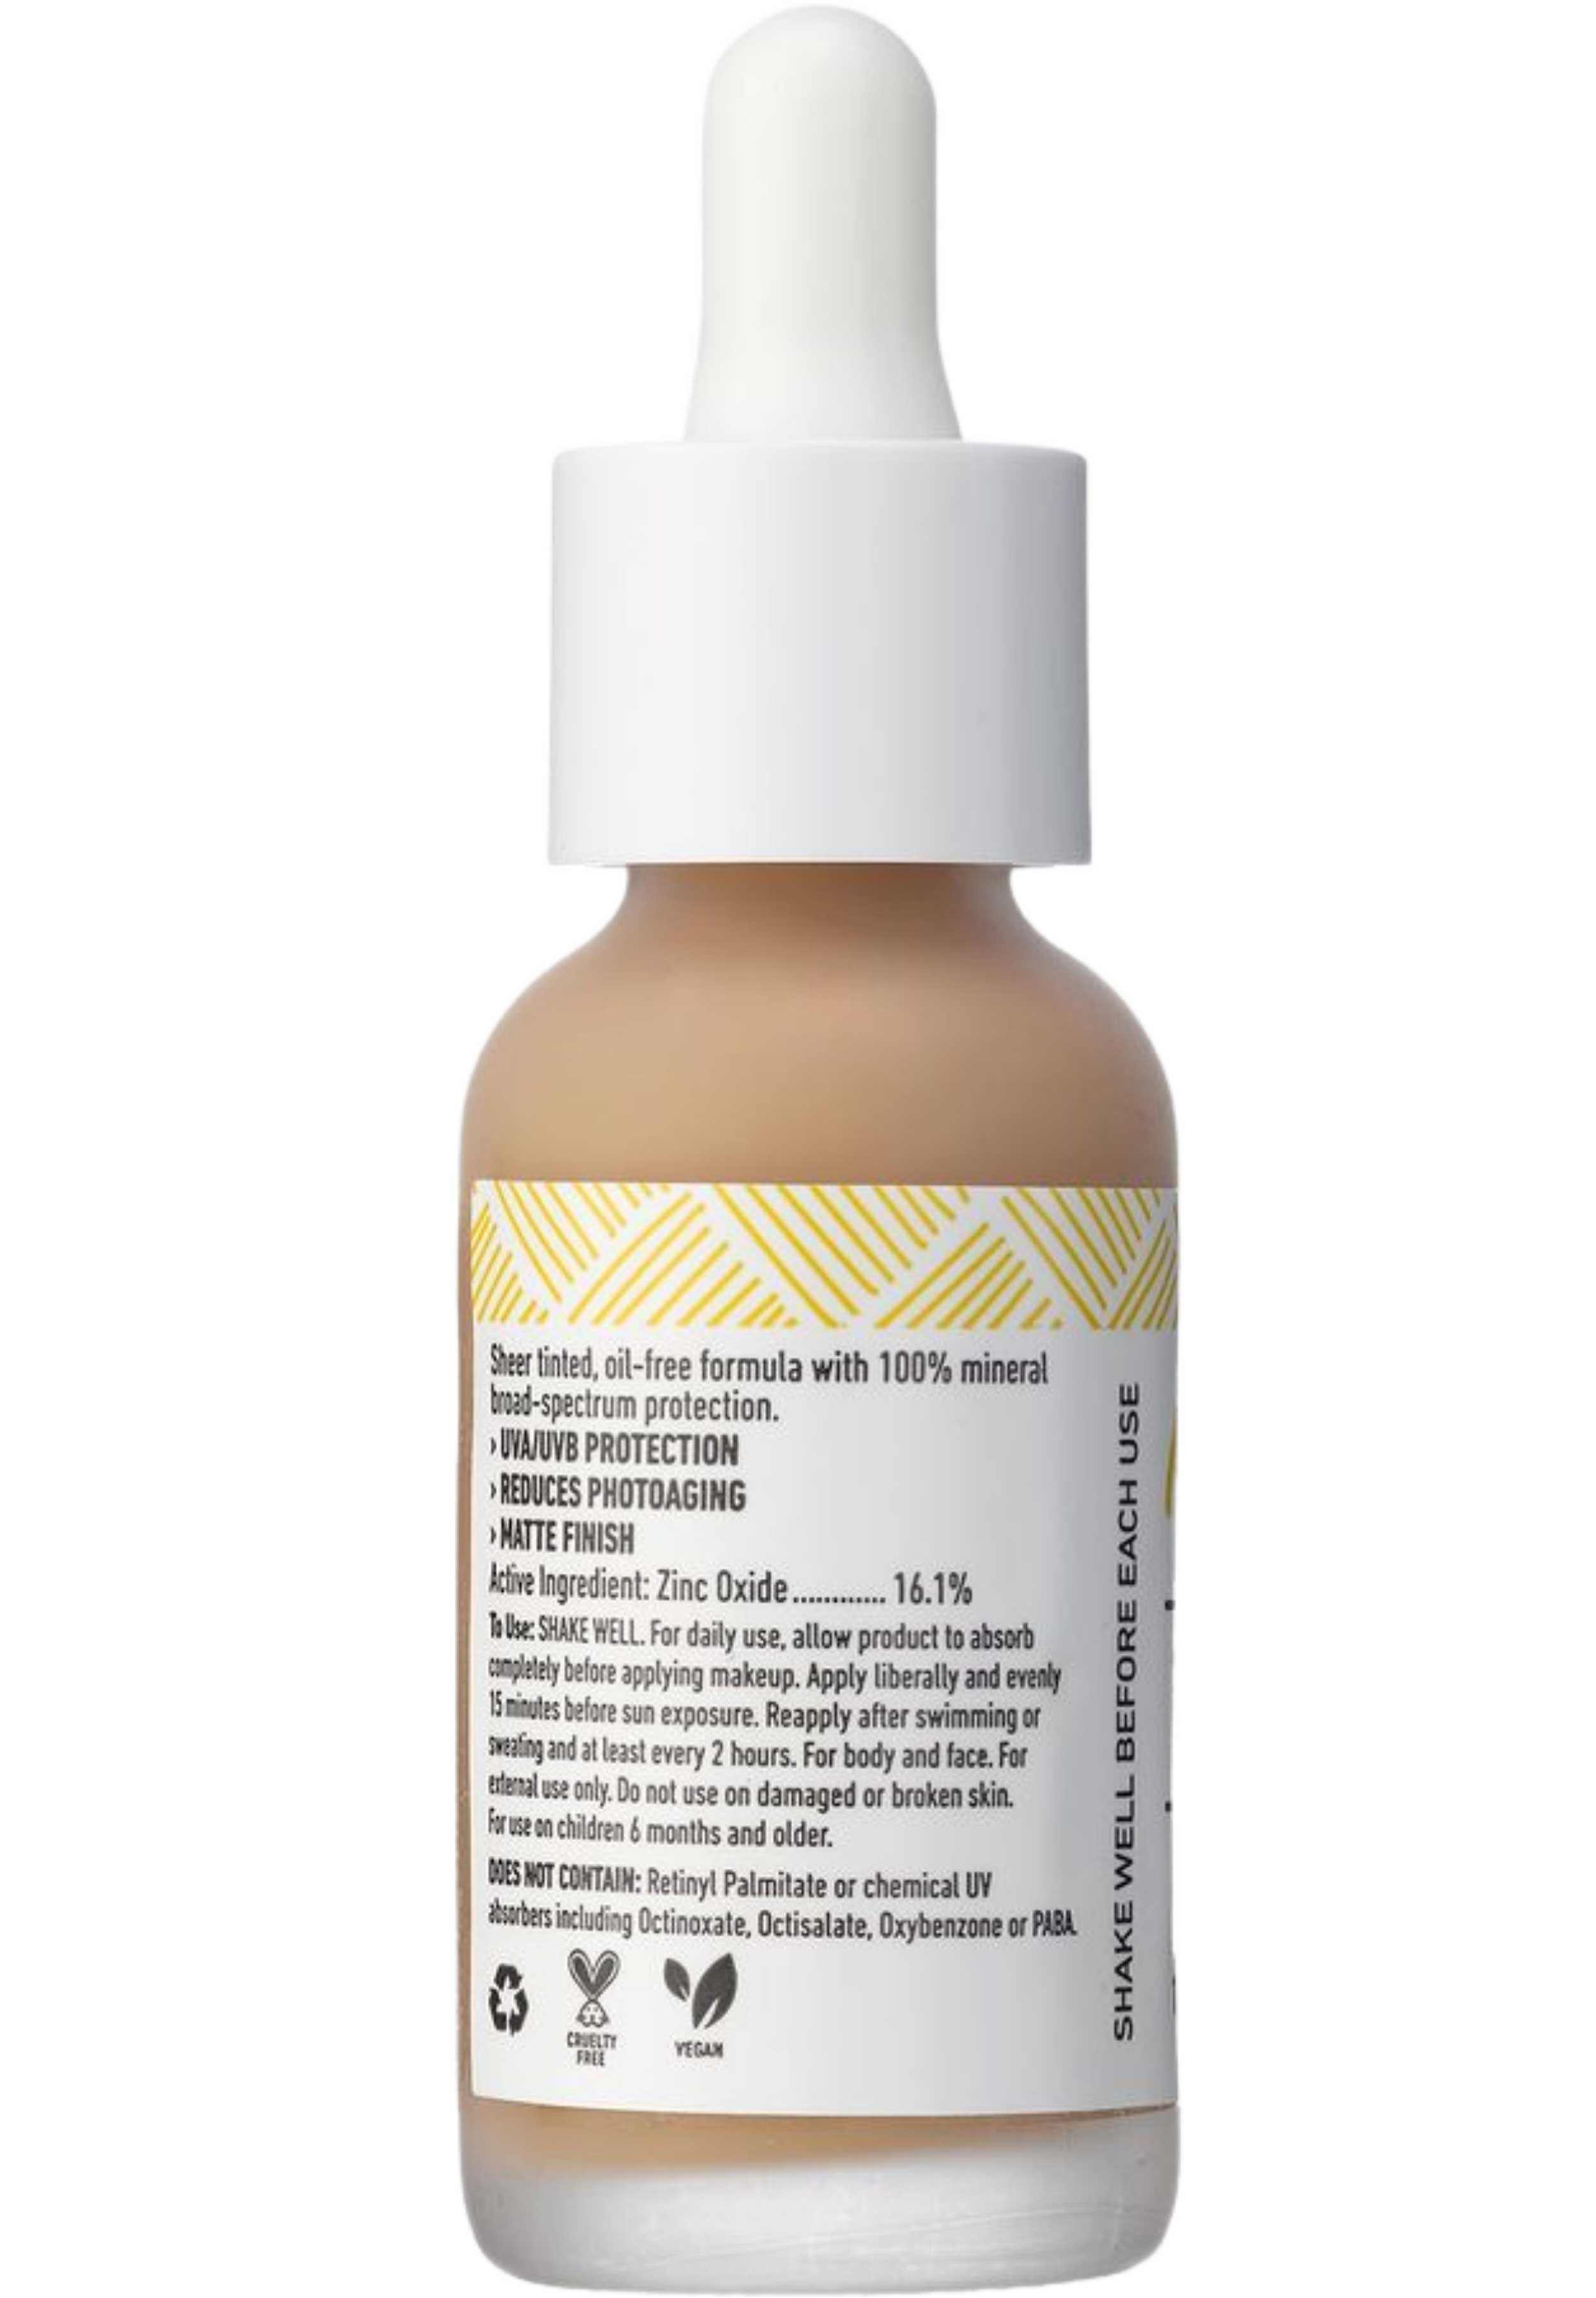 MyChelle Dermaceuticals Sun Shield Liquid SPF 50 - Medium/Dark (Natural Tan) Ingredients